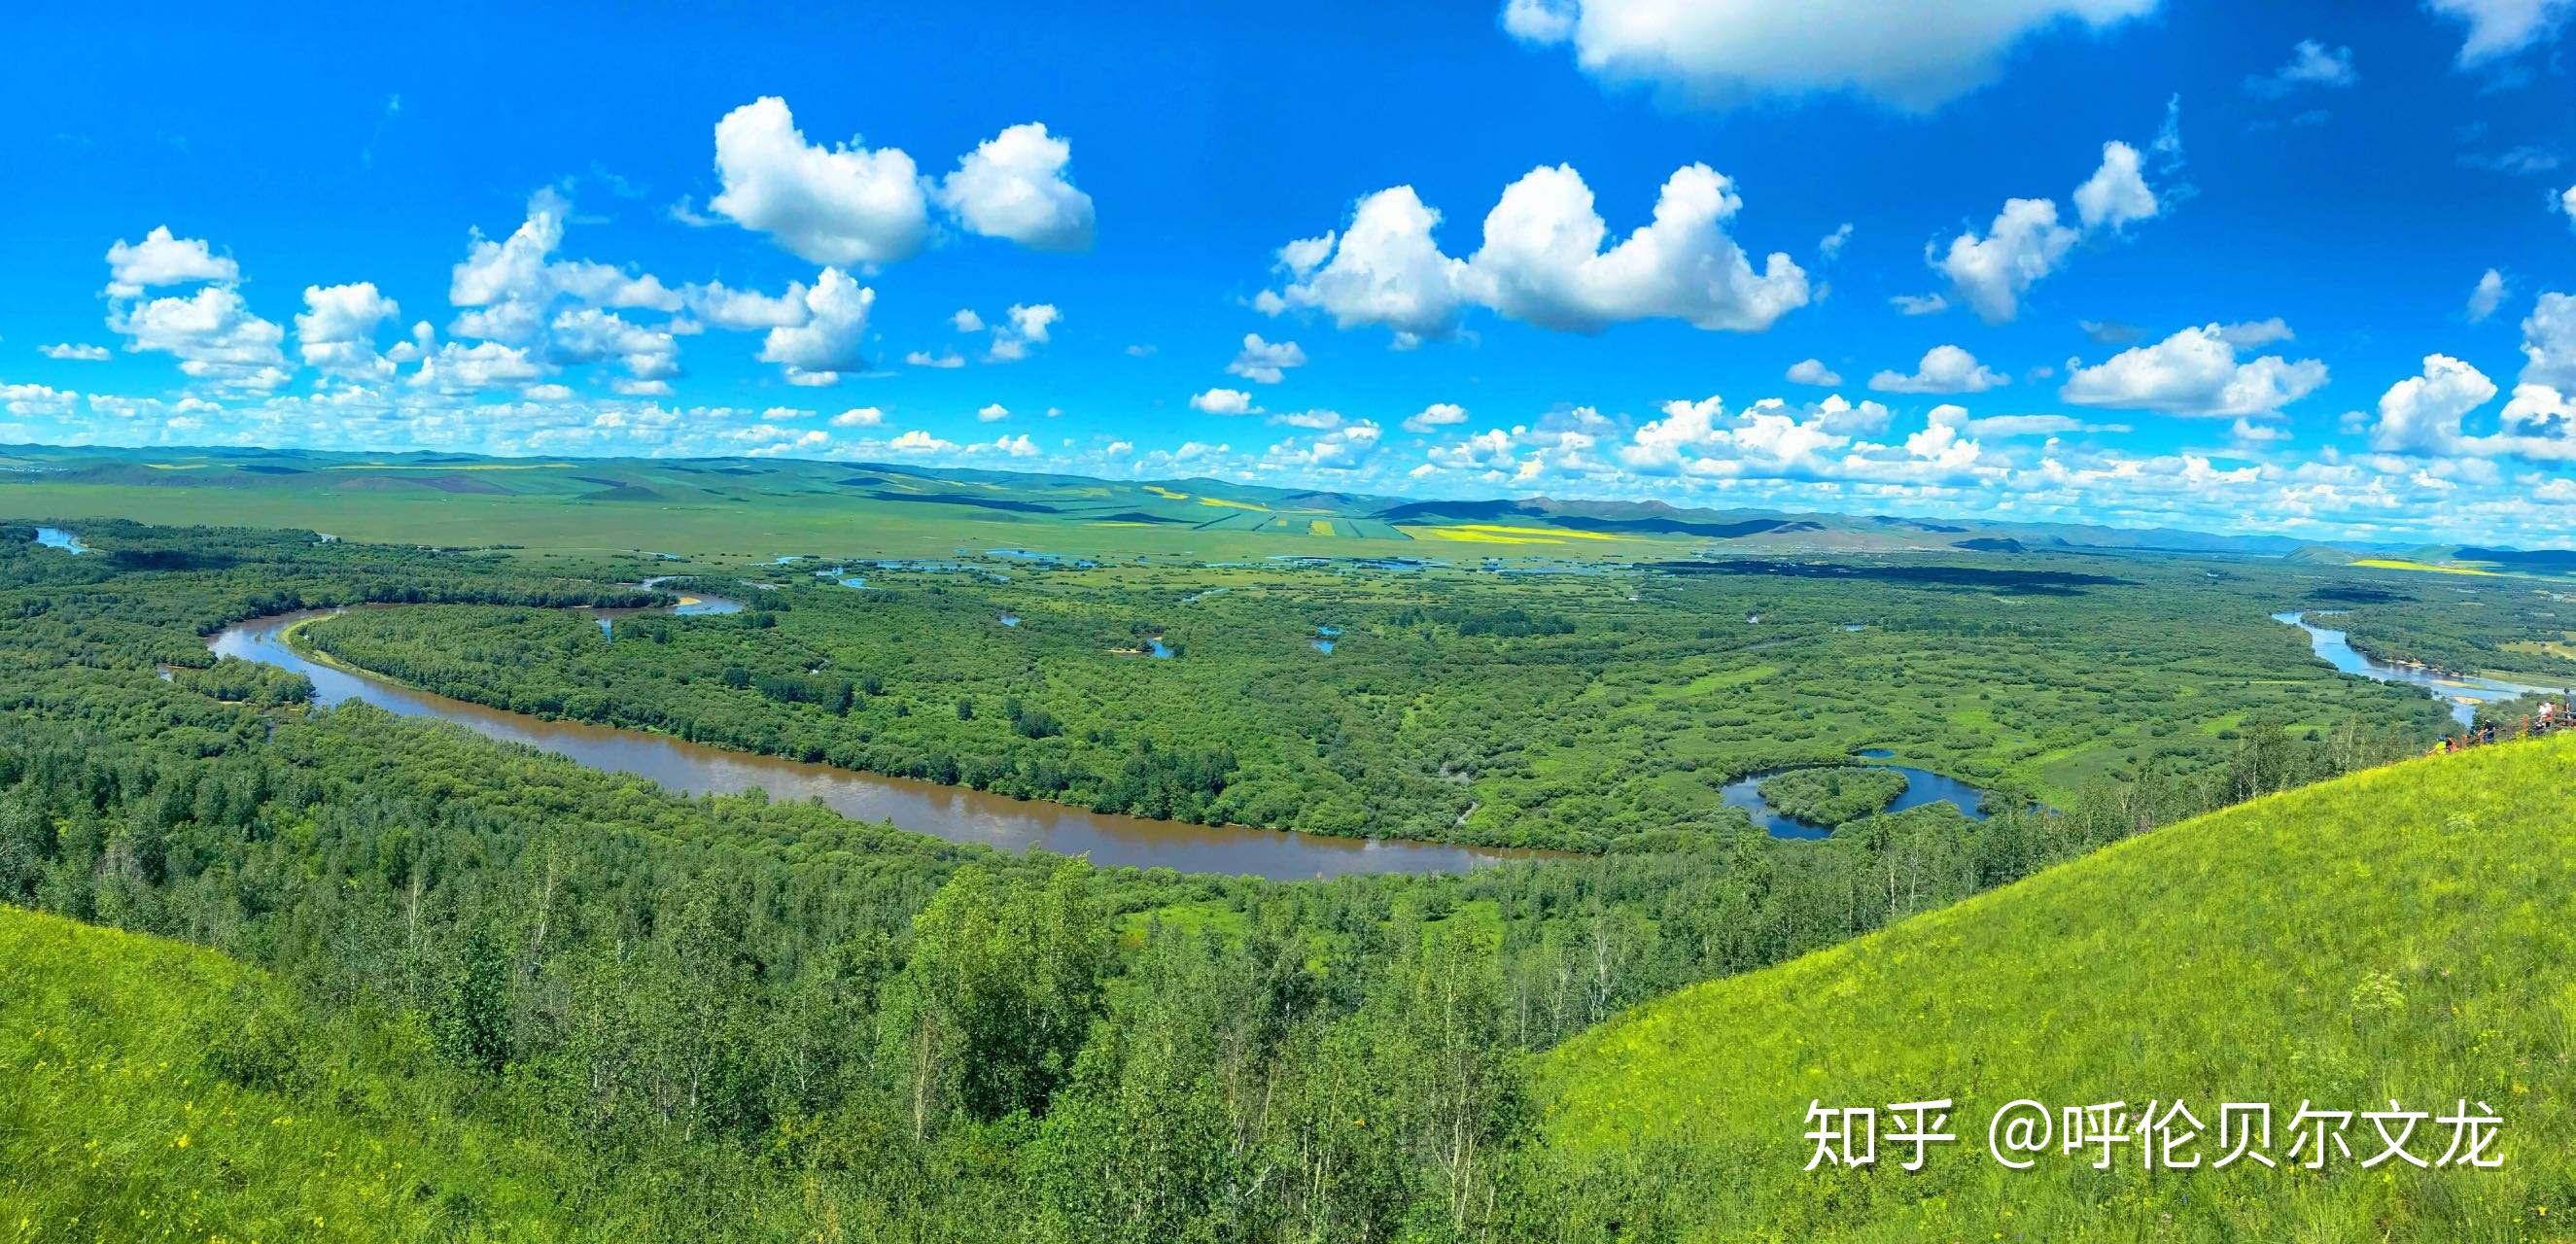 10,额尔古纳湿地 是中国目前保持原状态完好,面积较大的湿地,也被誉为